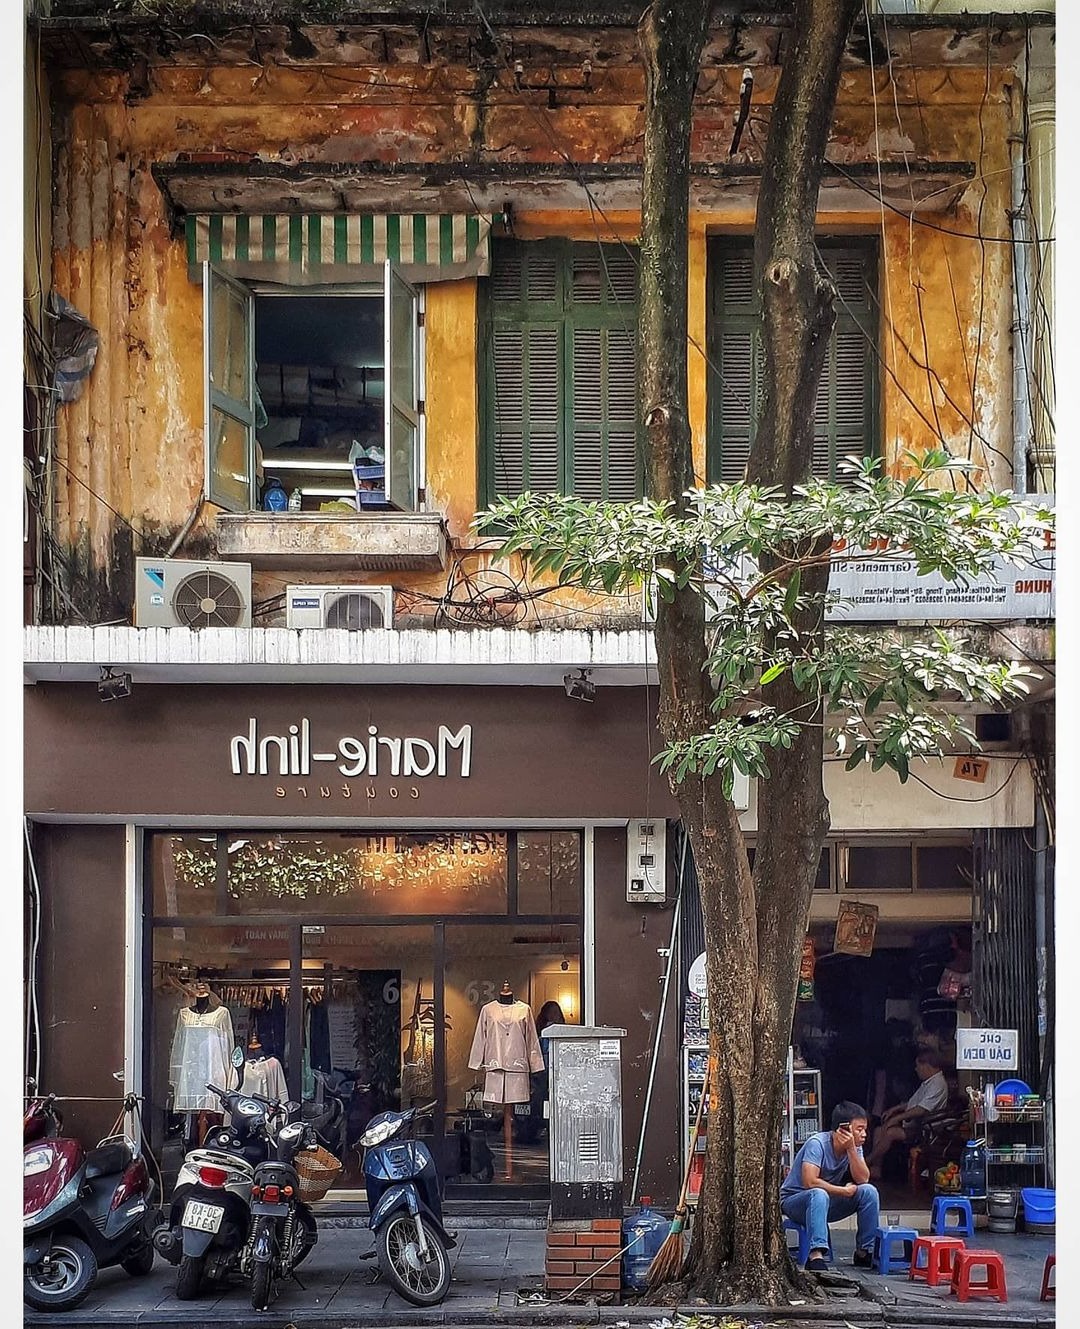 Câu hỏi về địa danh tưởng không quen mà quen không tưởng: đây là nơi duy nhất ở Việt Nam giáp 8 tỉnh